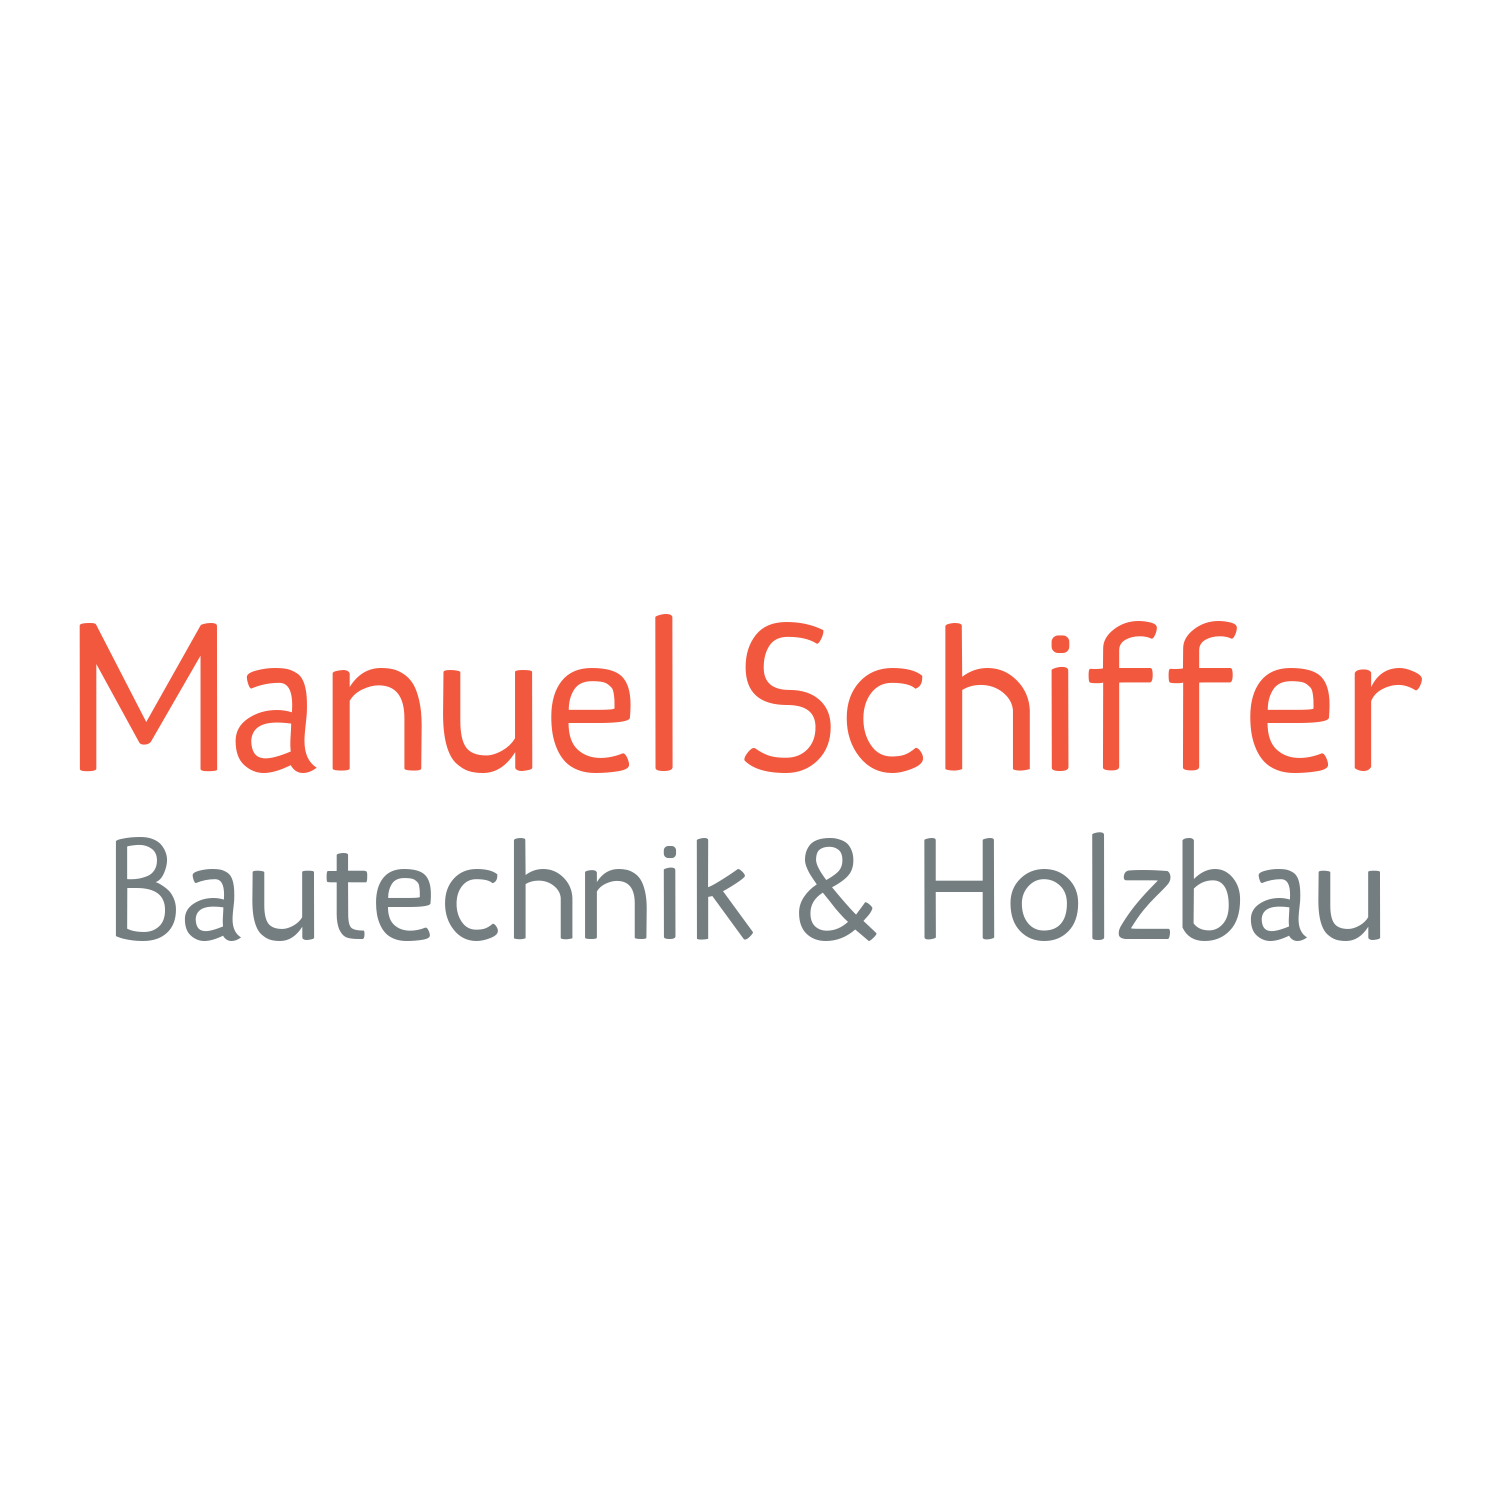 Manuel Schiffer Bautechnik & Holzbau in Hilpoltstein - Logo